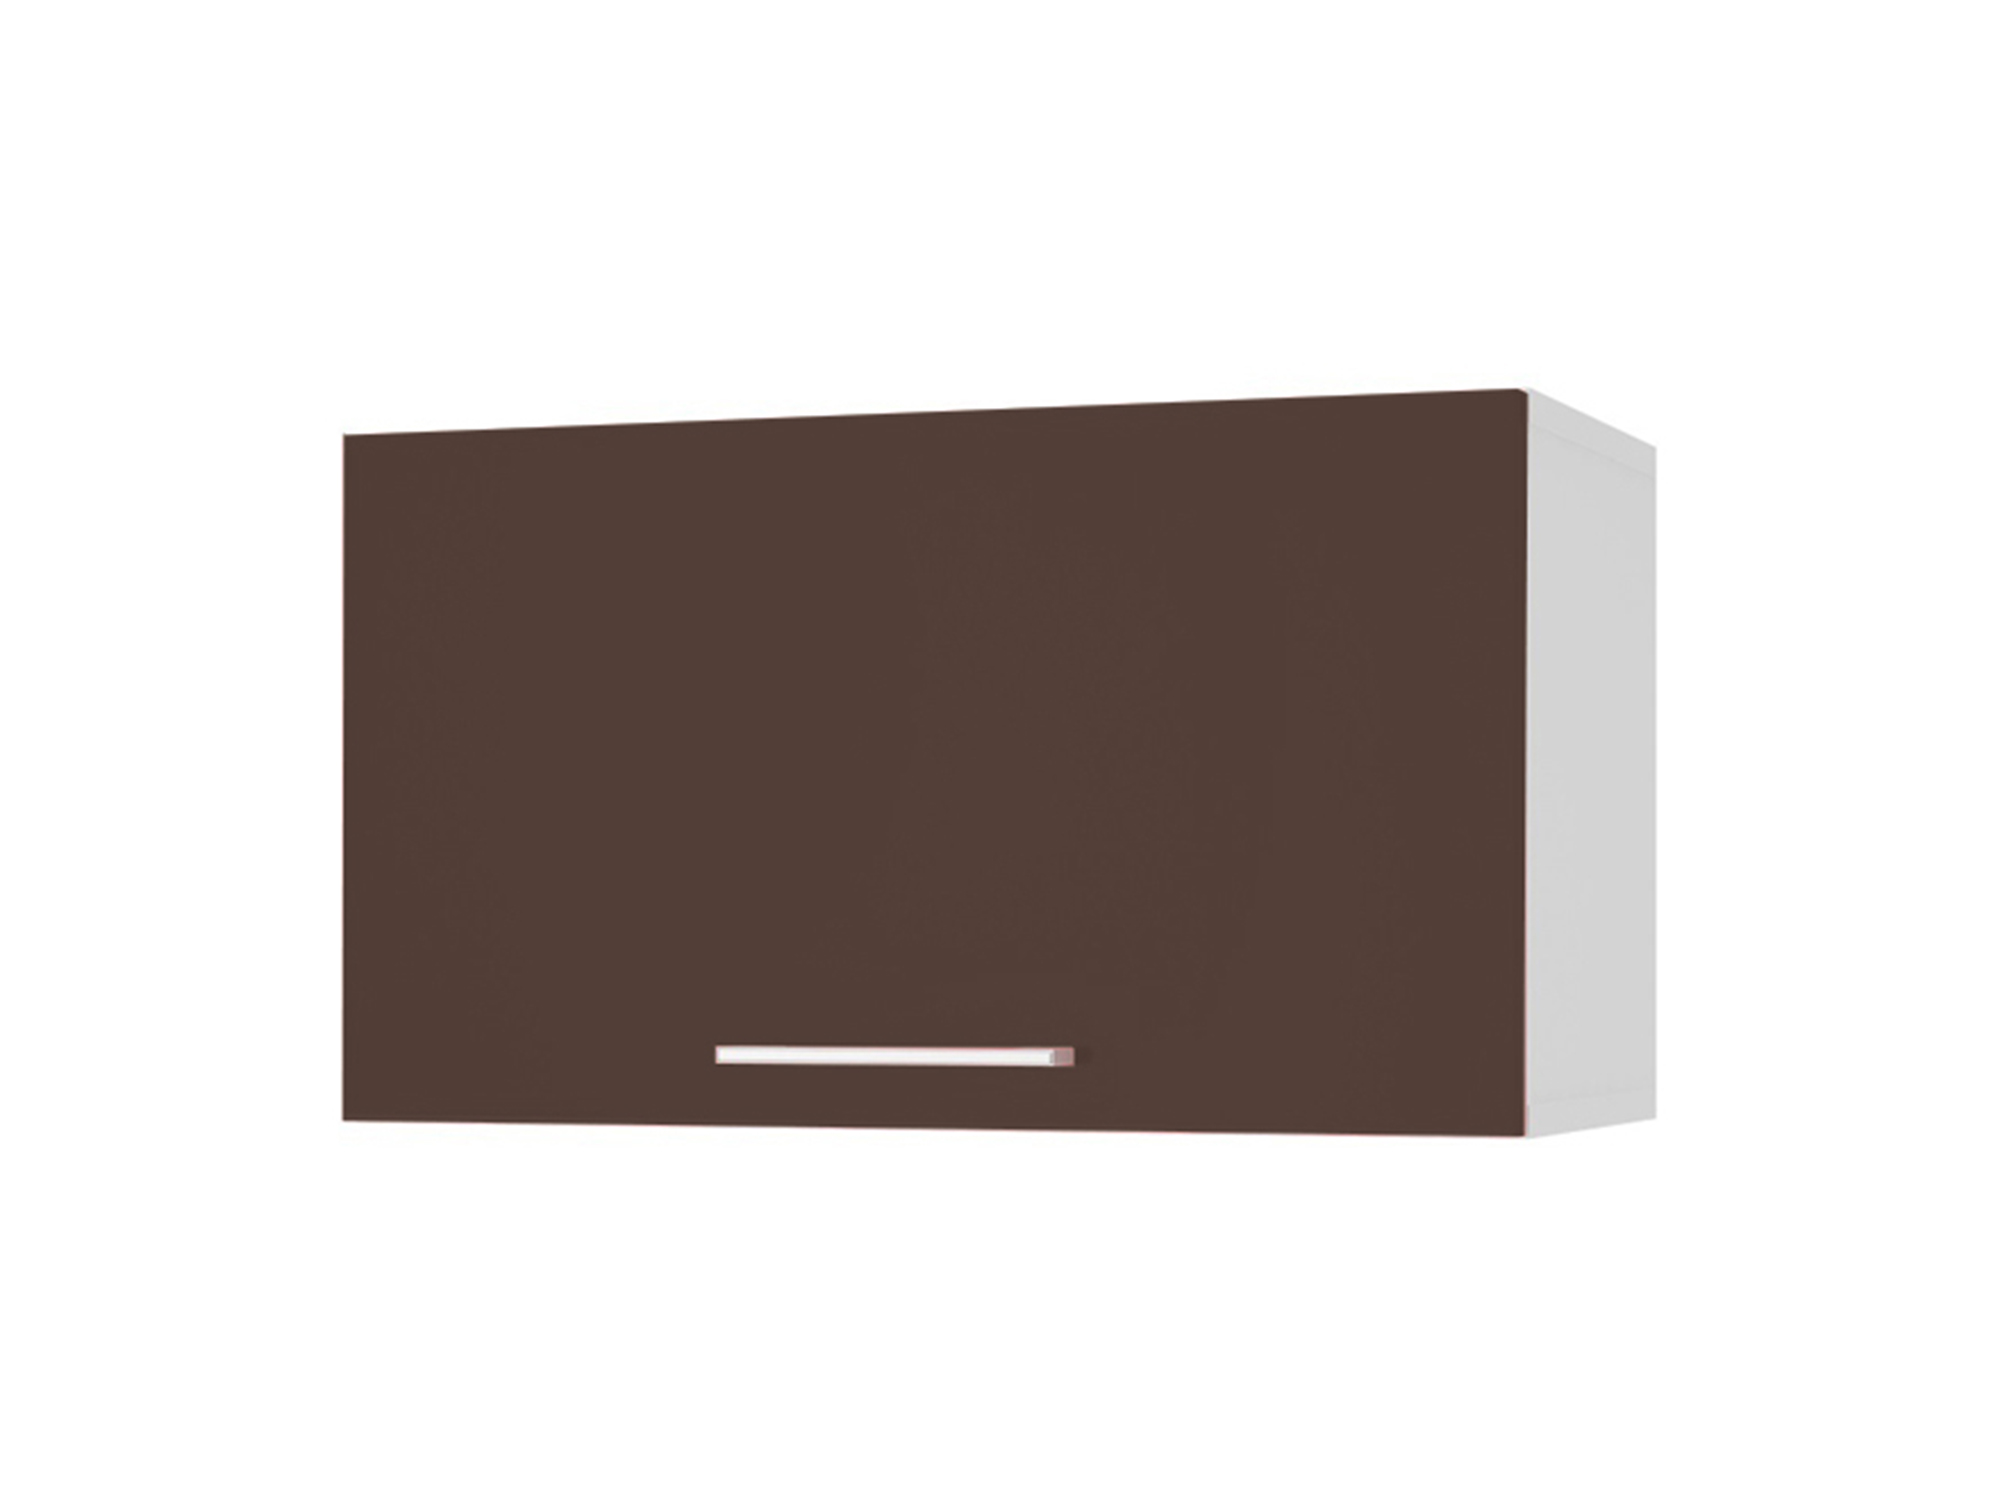 Шкаф навесной под вытяжку 60 Люкс Шоколад глянец, , Коричневый темный, Белый, МДФ, ПВХ, ЛДСП шкаф навесной 40 люкс шоколад глянец коричневый темный белый мдф пвх лдсп